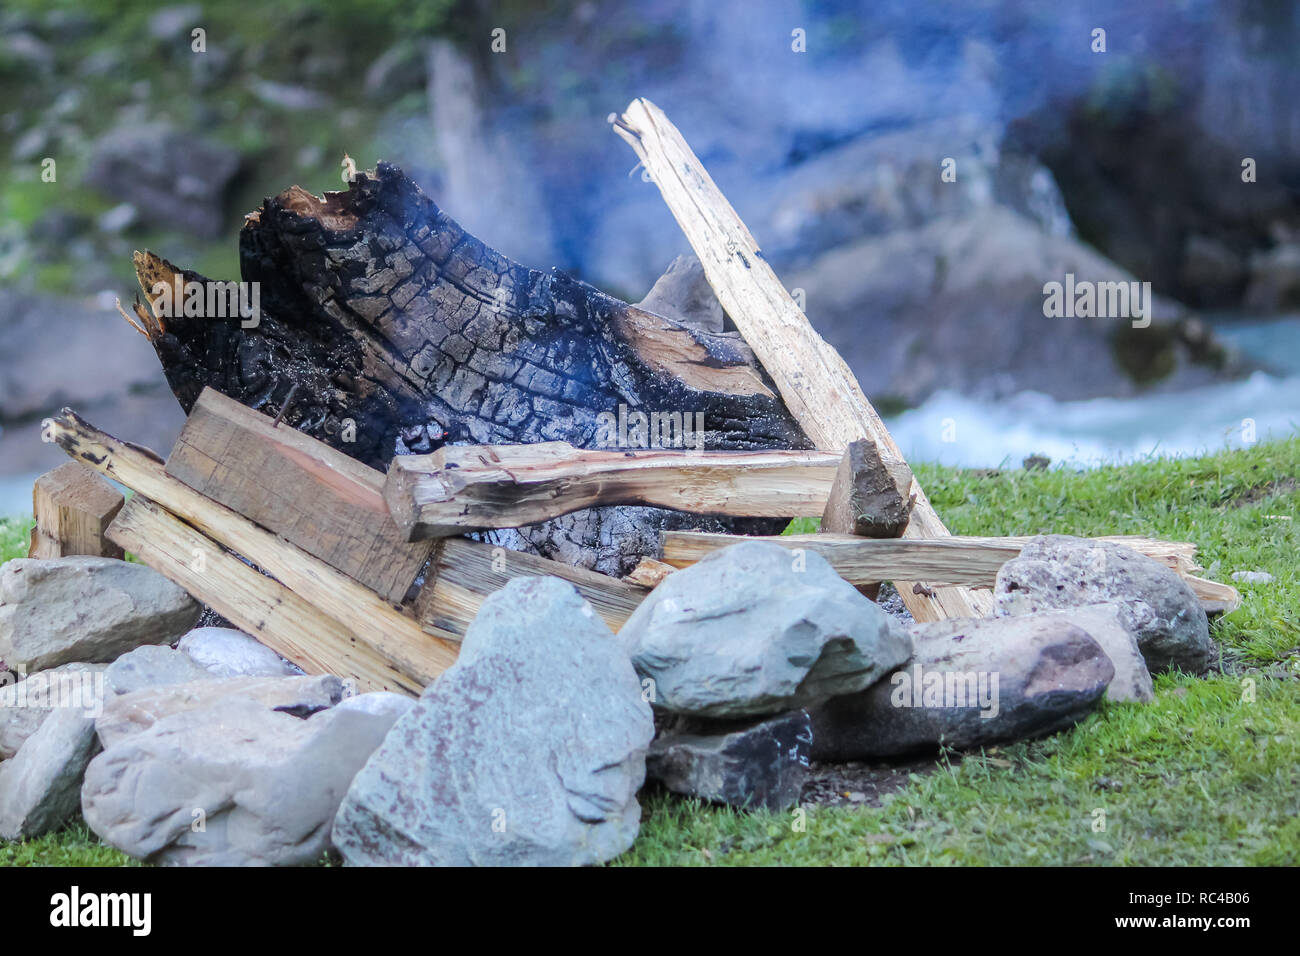 Brennholz brannten auf einem Campingplatz. Wärme von bonfire während Trekking am Morgen Stockfoto